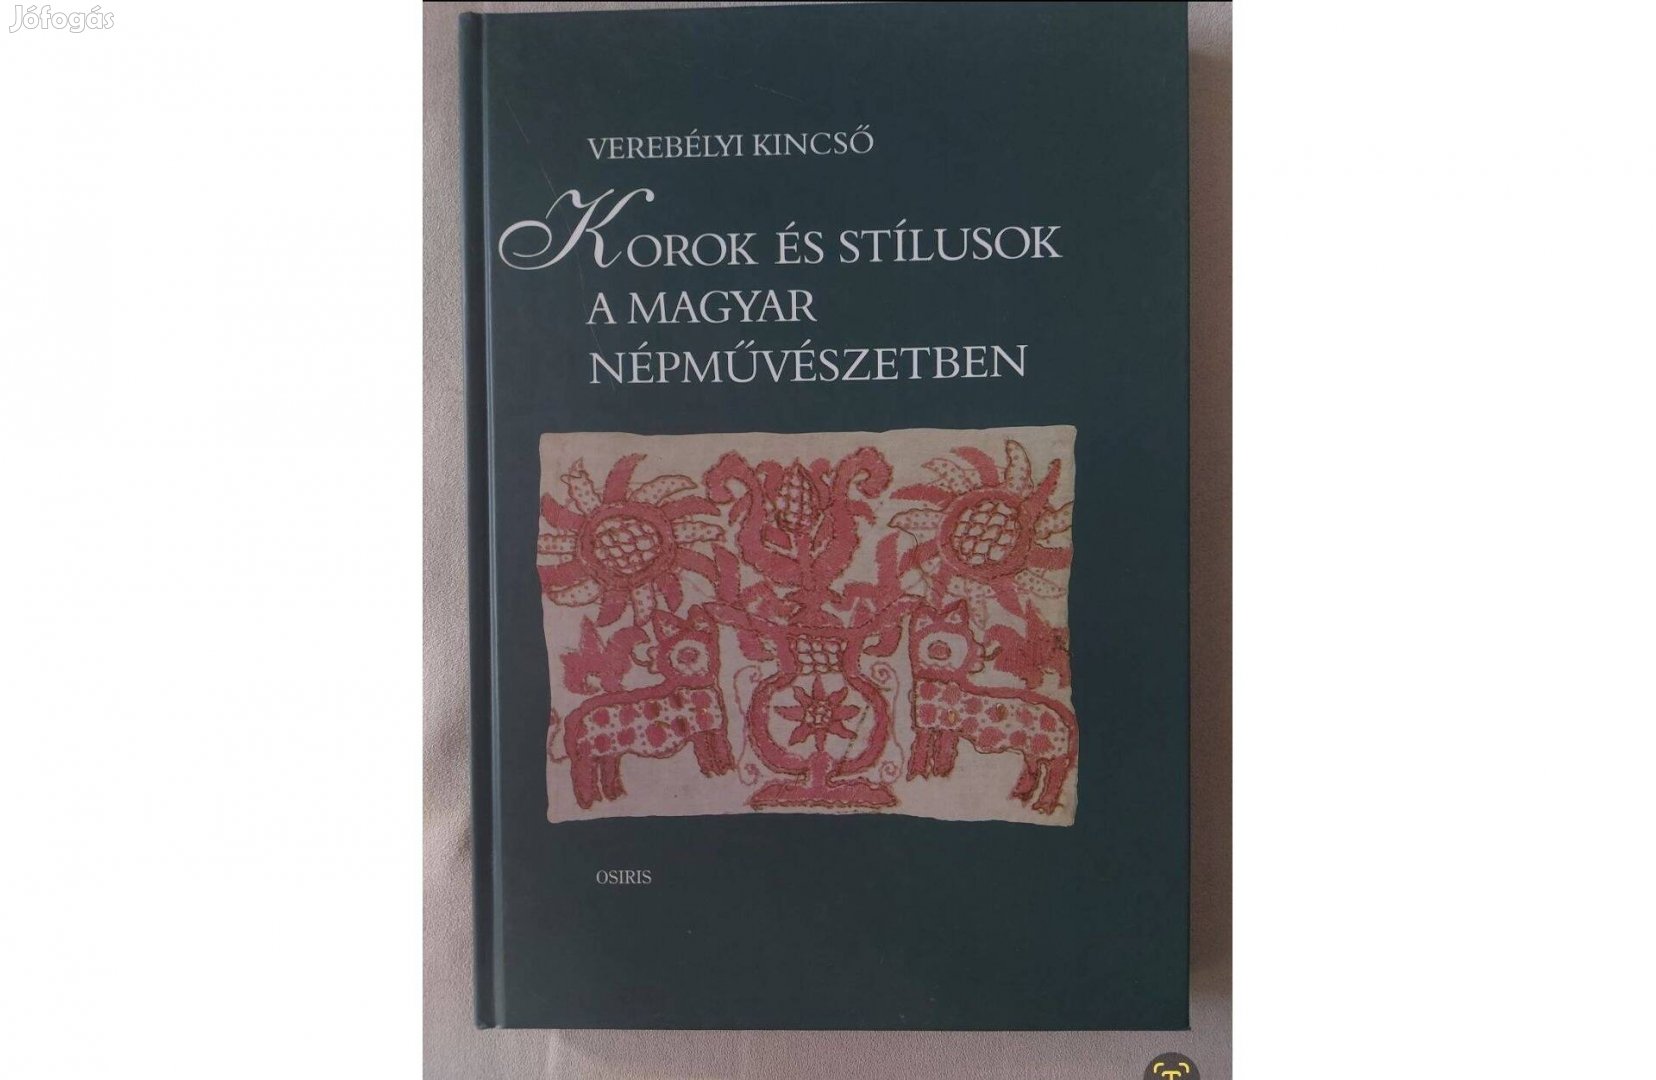 Verebélyi Kincső: Korok és stílusok a magyar népművészetben (2002)